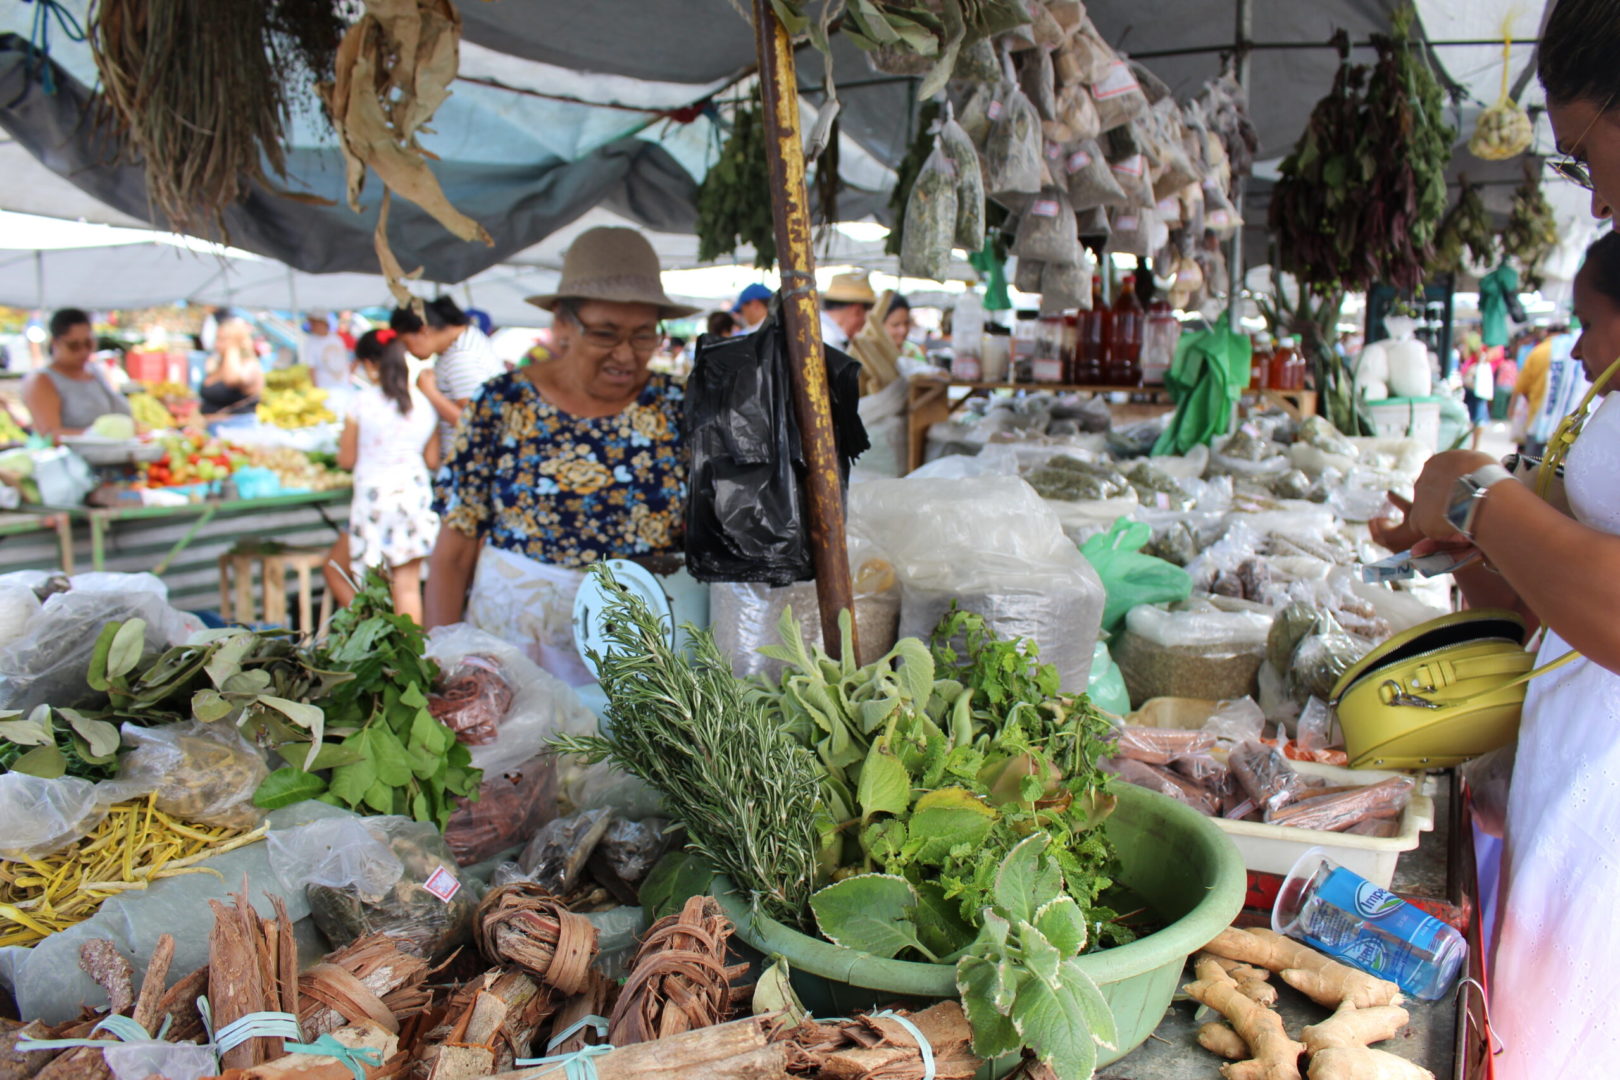 Foto da uma banca da feira de Itabaiana, com uma senhora ao fundo, olhando os legumes e verduras.